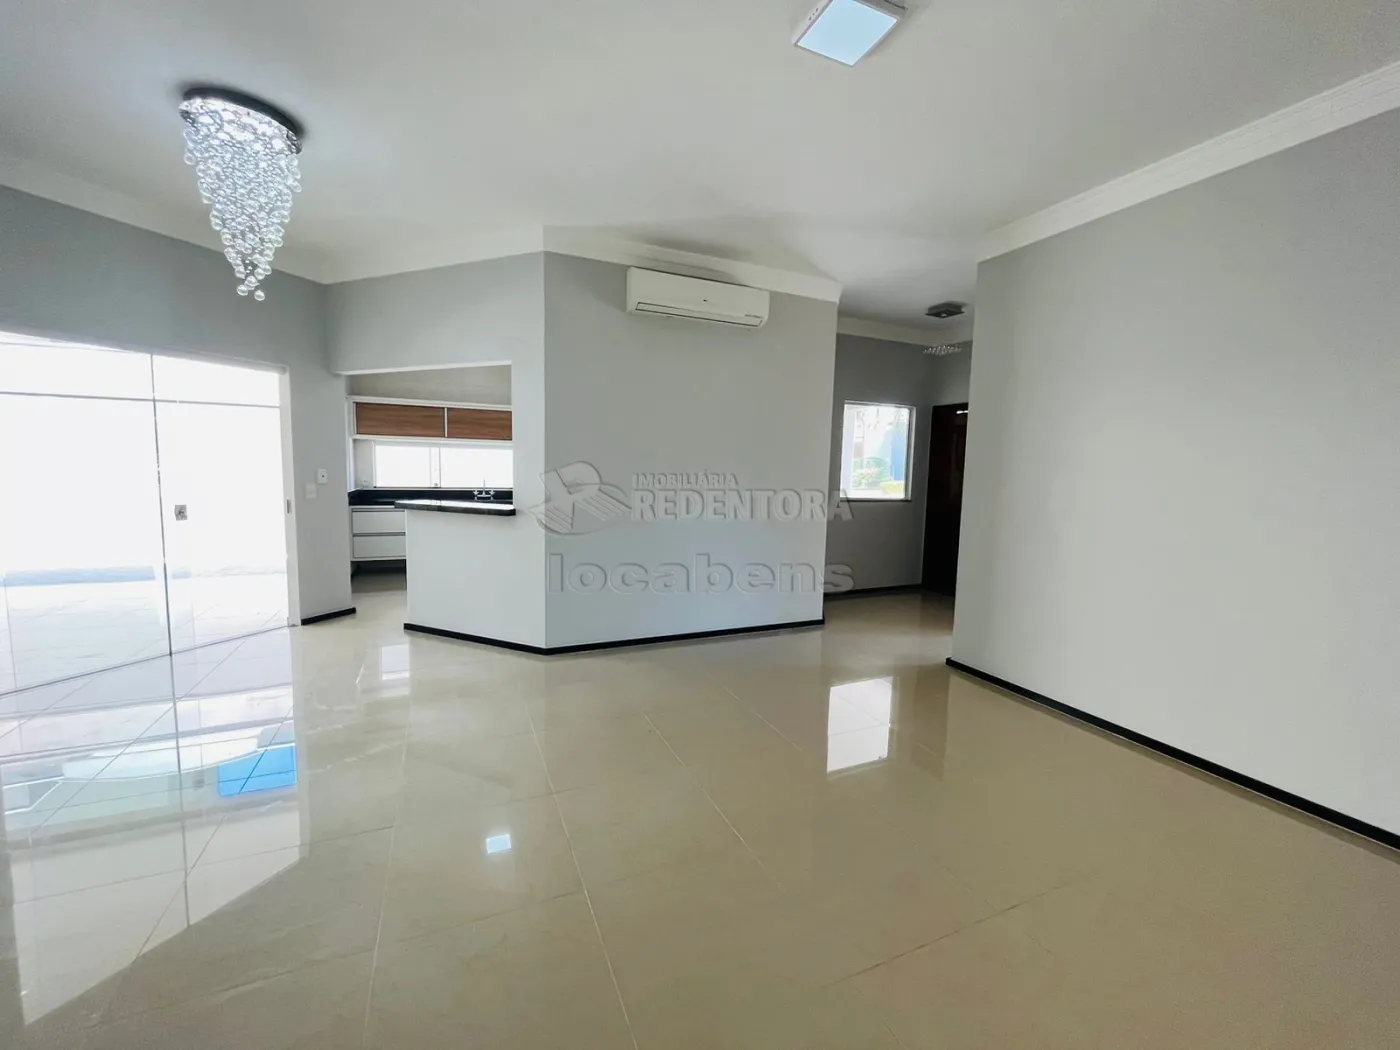 Comprar Casa / Condomínio em Mirassol apenas R$ 860.000,00 - Foto 4